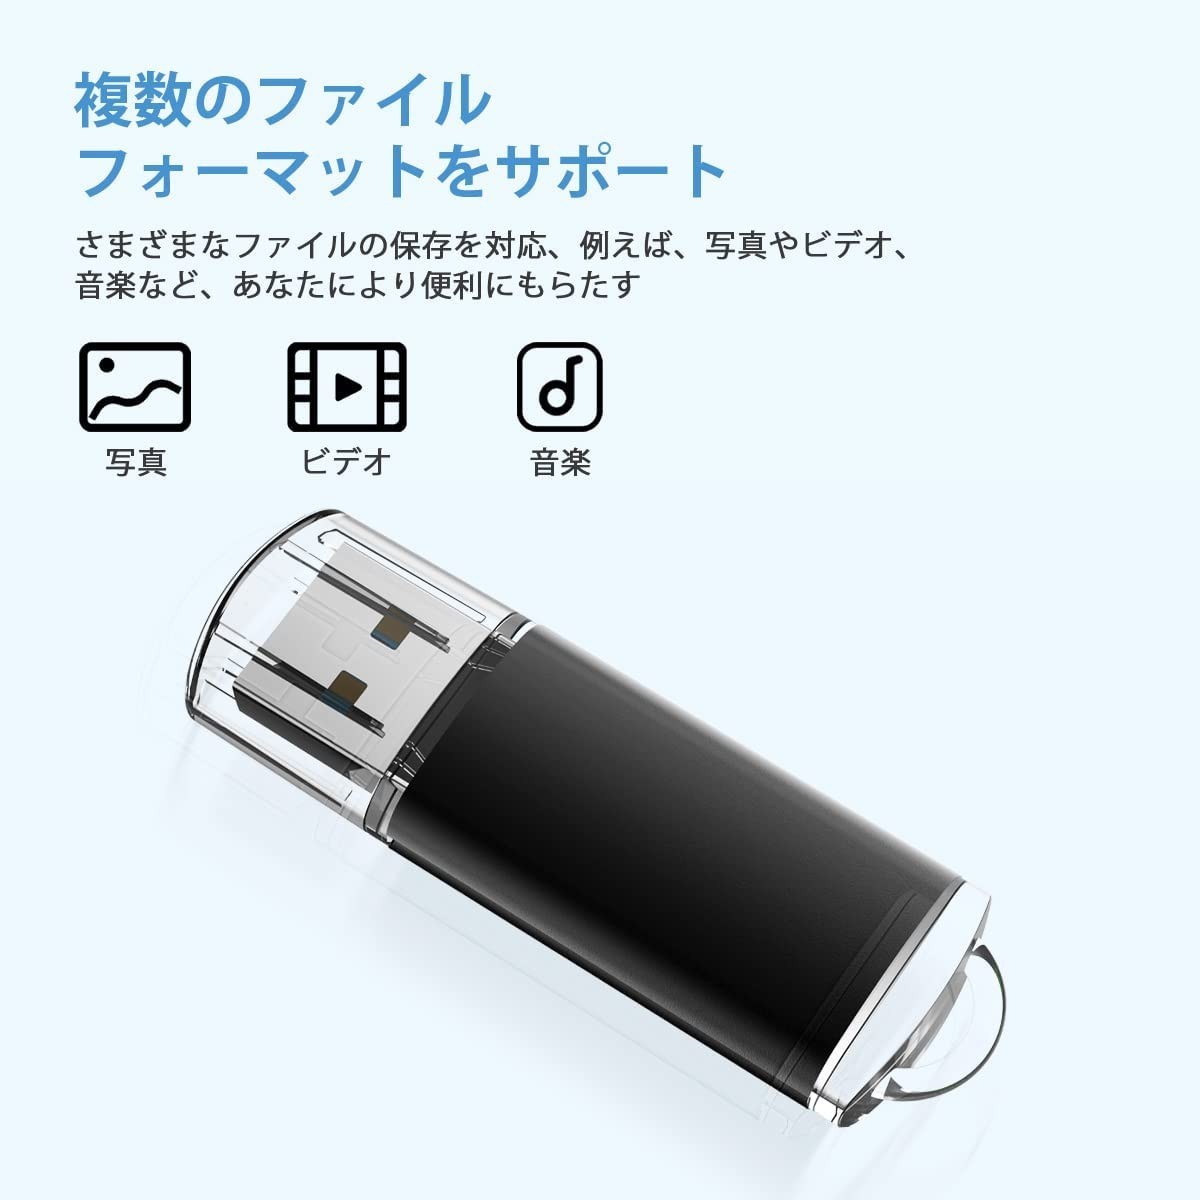 驚きの価格 RAOYI USBメモリ 32GB USB2.0 5個セット フラッシュドライブ キャップ式 コンパクト 5色 黒 赤 青 緑 銀 